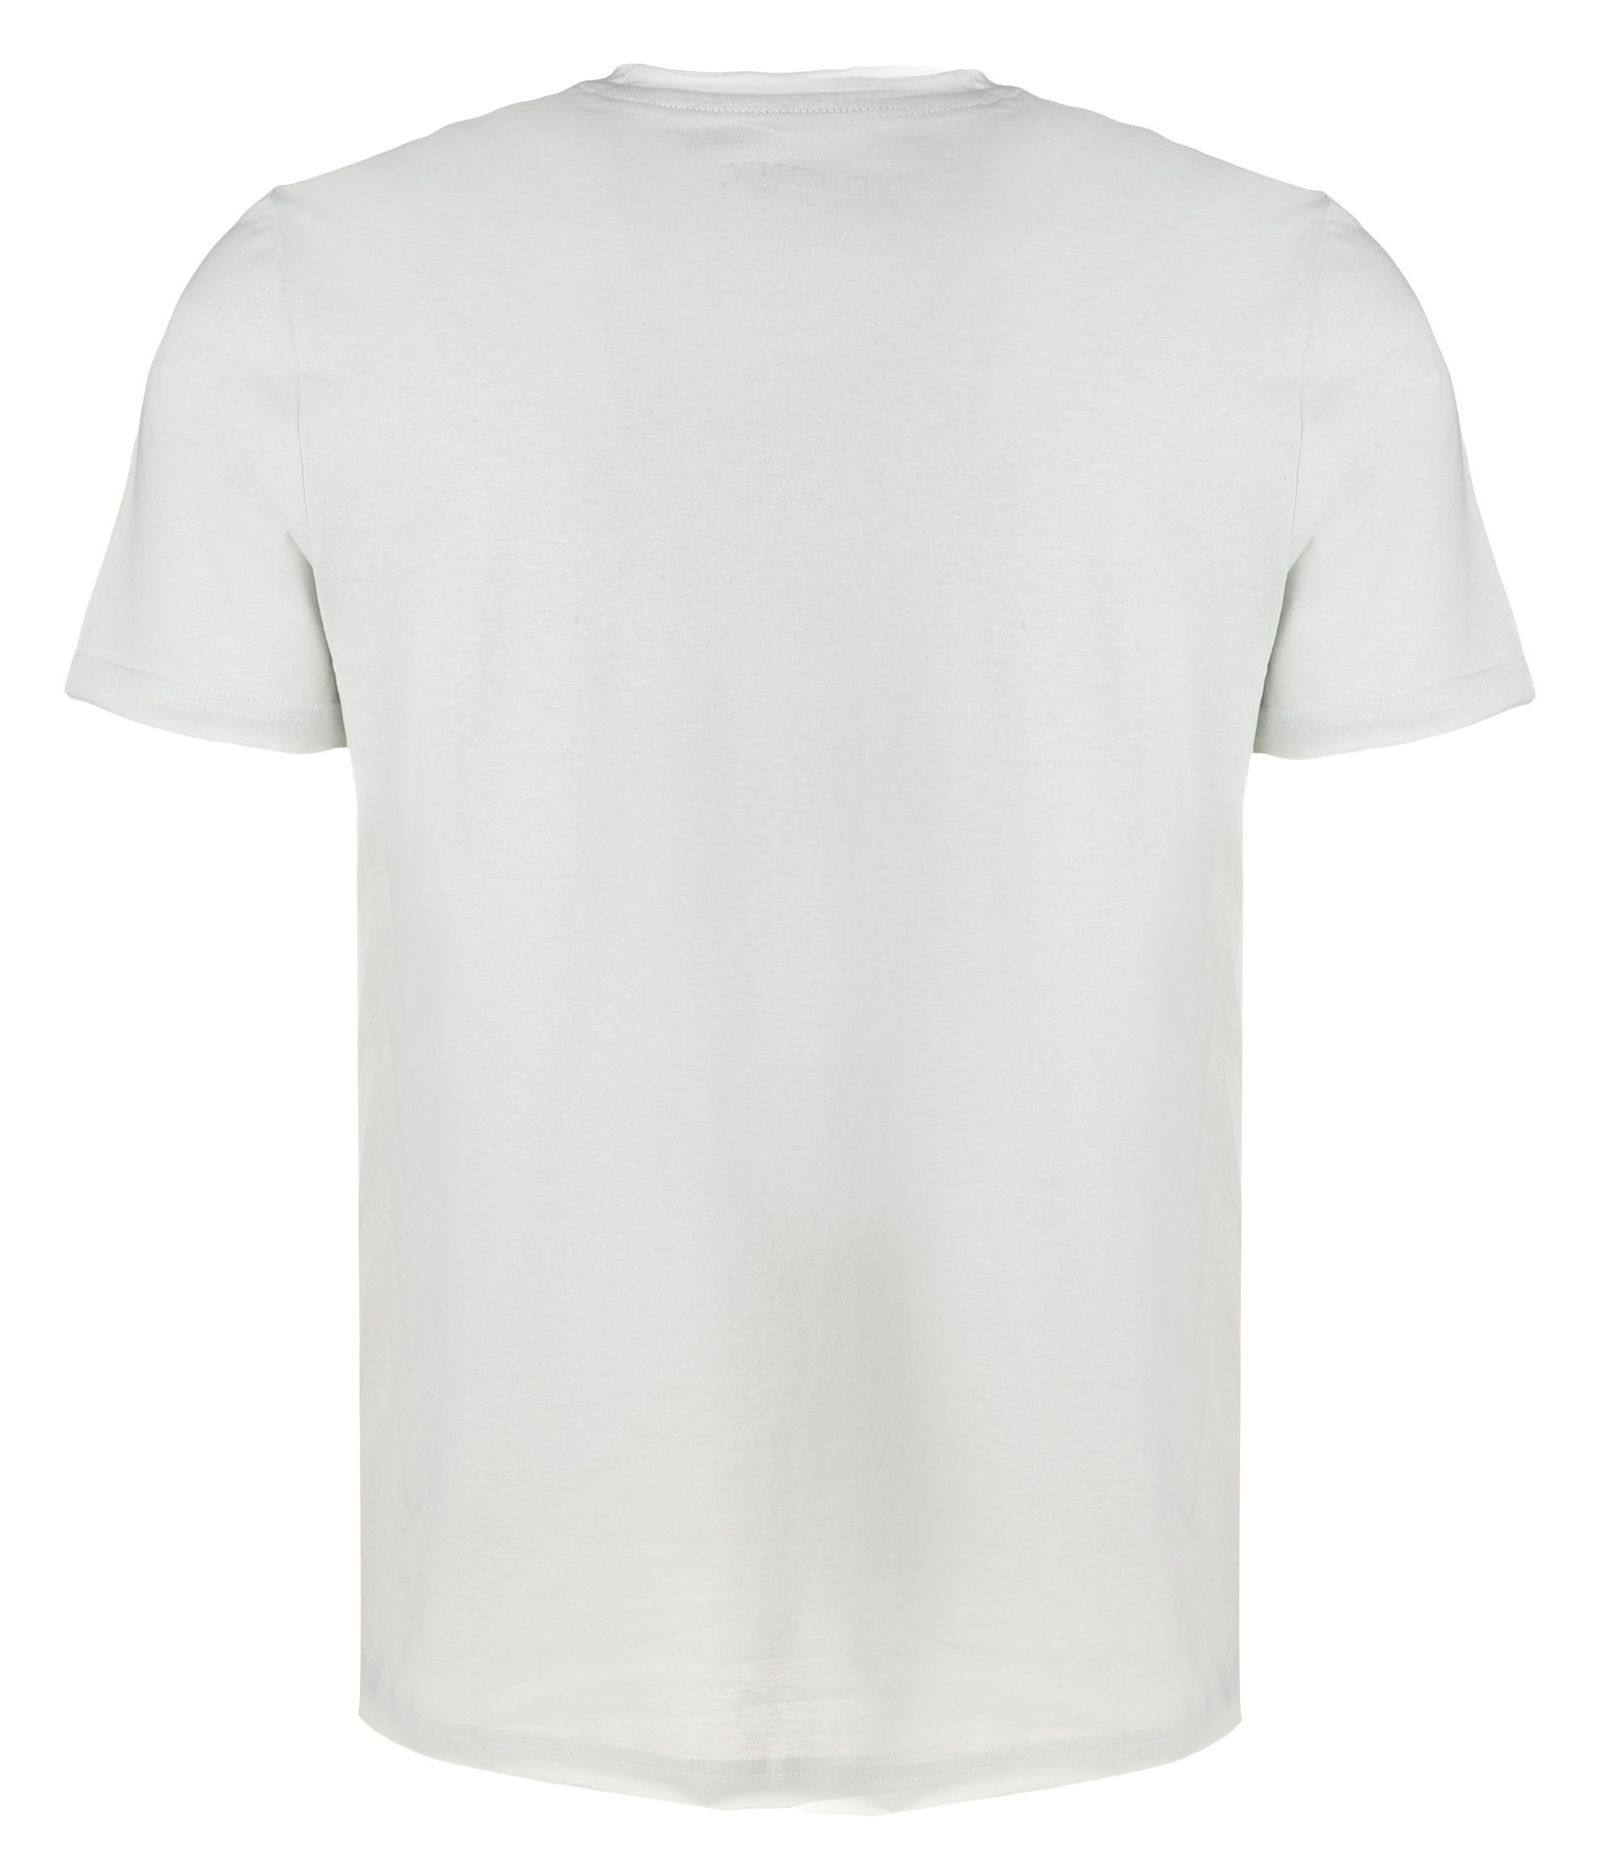 تی شرت مردانه یوپیم مدل 5112023 -  - 3